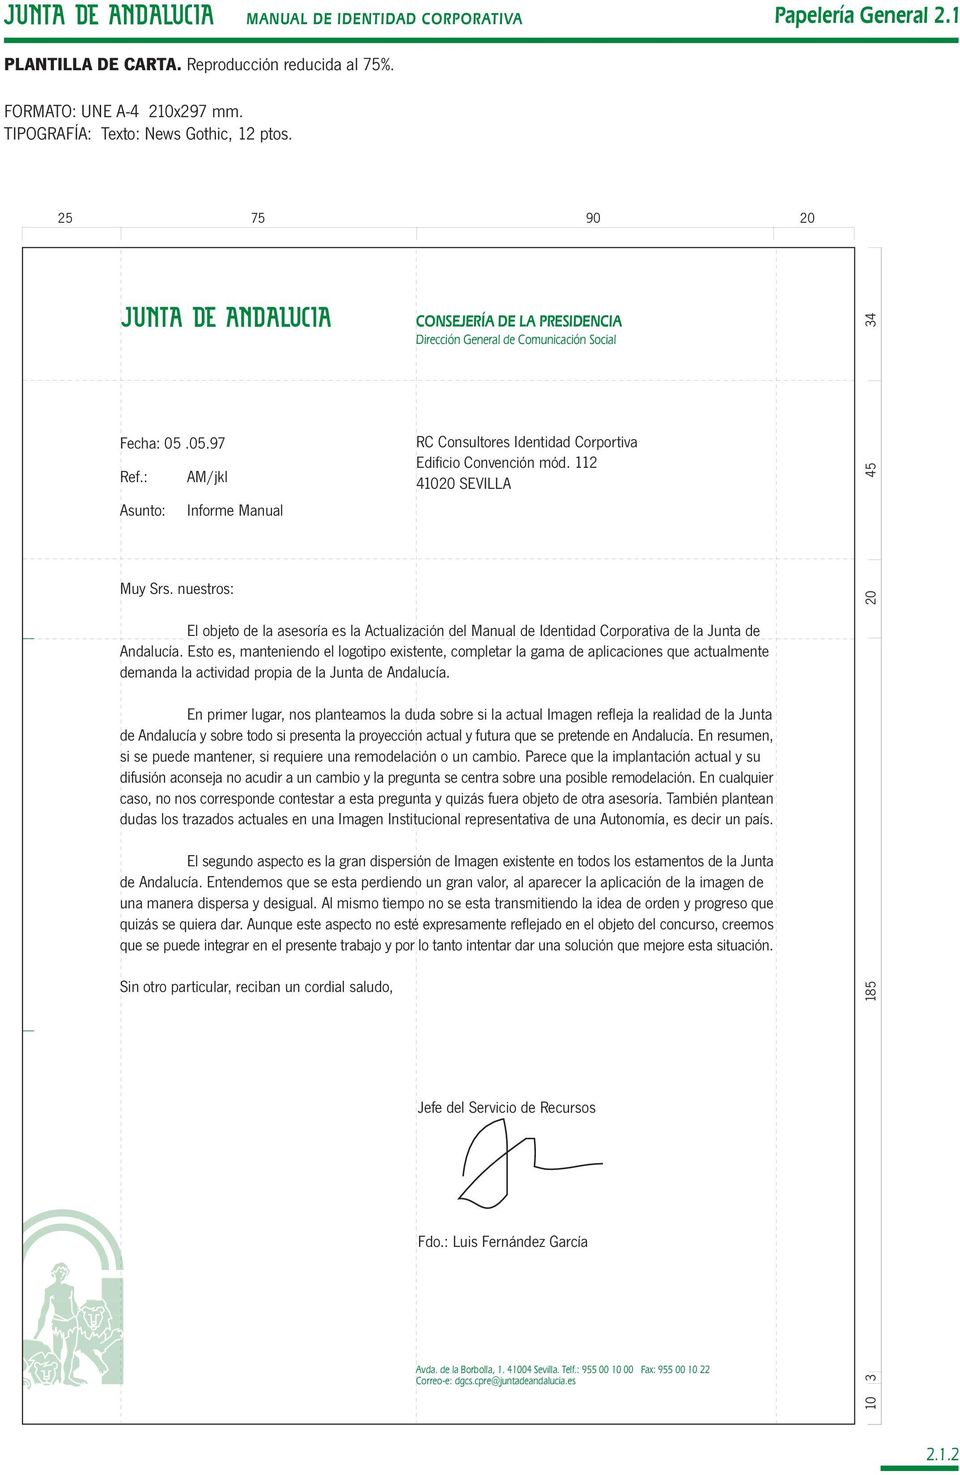 nuestros: El objeto de la asesoría es la Actualización del Manual de Identidad Corporativa de la Junta de Andalucía.